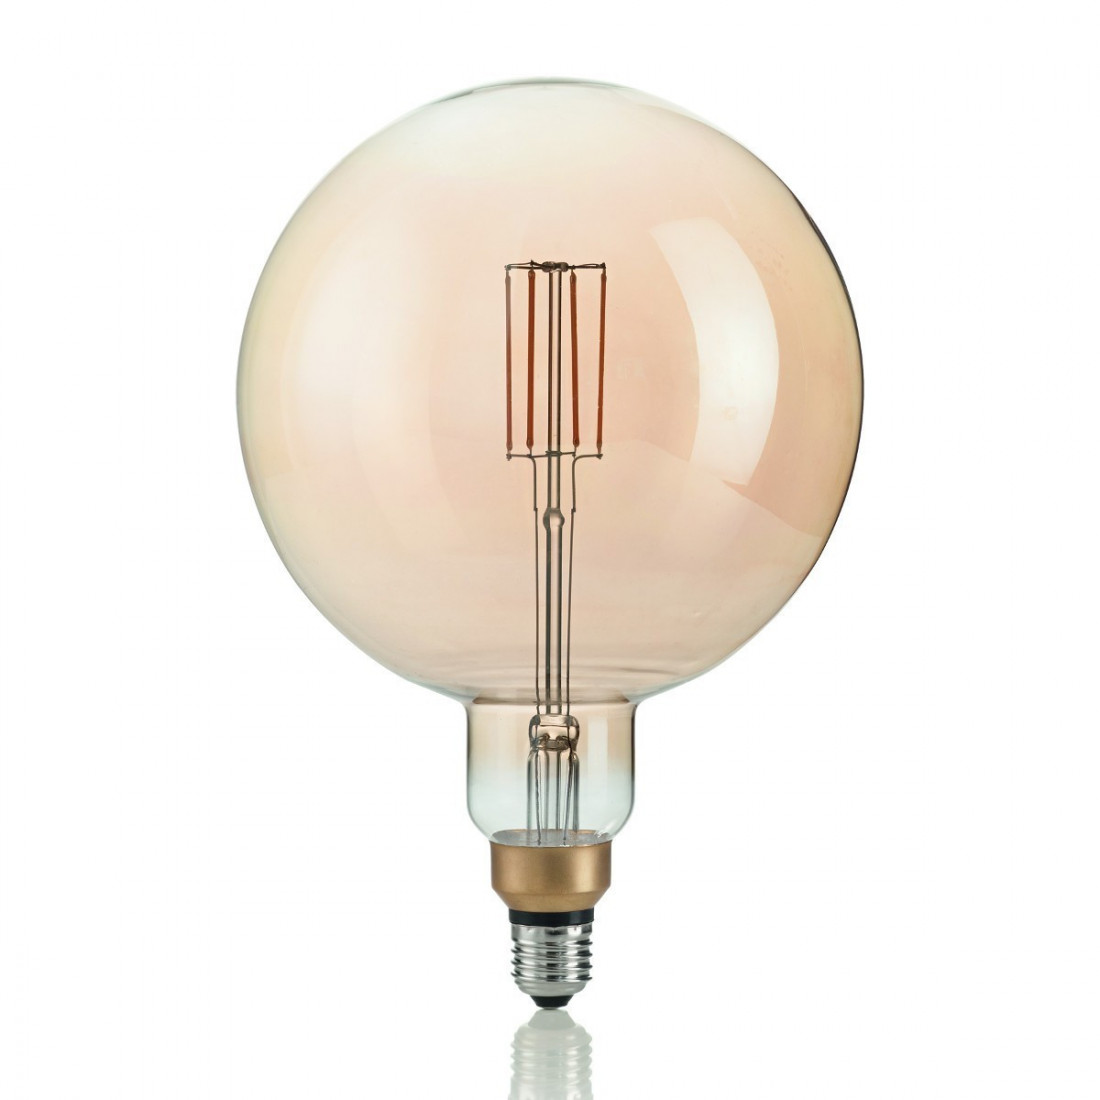 Ampoule ID-VINTAGE XL E27 GLOBO 4W LED 320LM 19.5cm verre ambre lumière chaude à l'intérieur